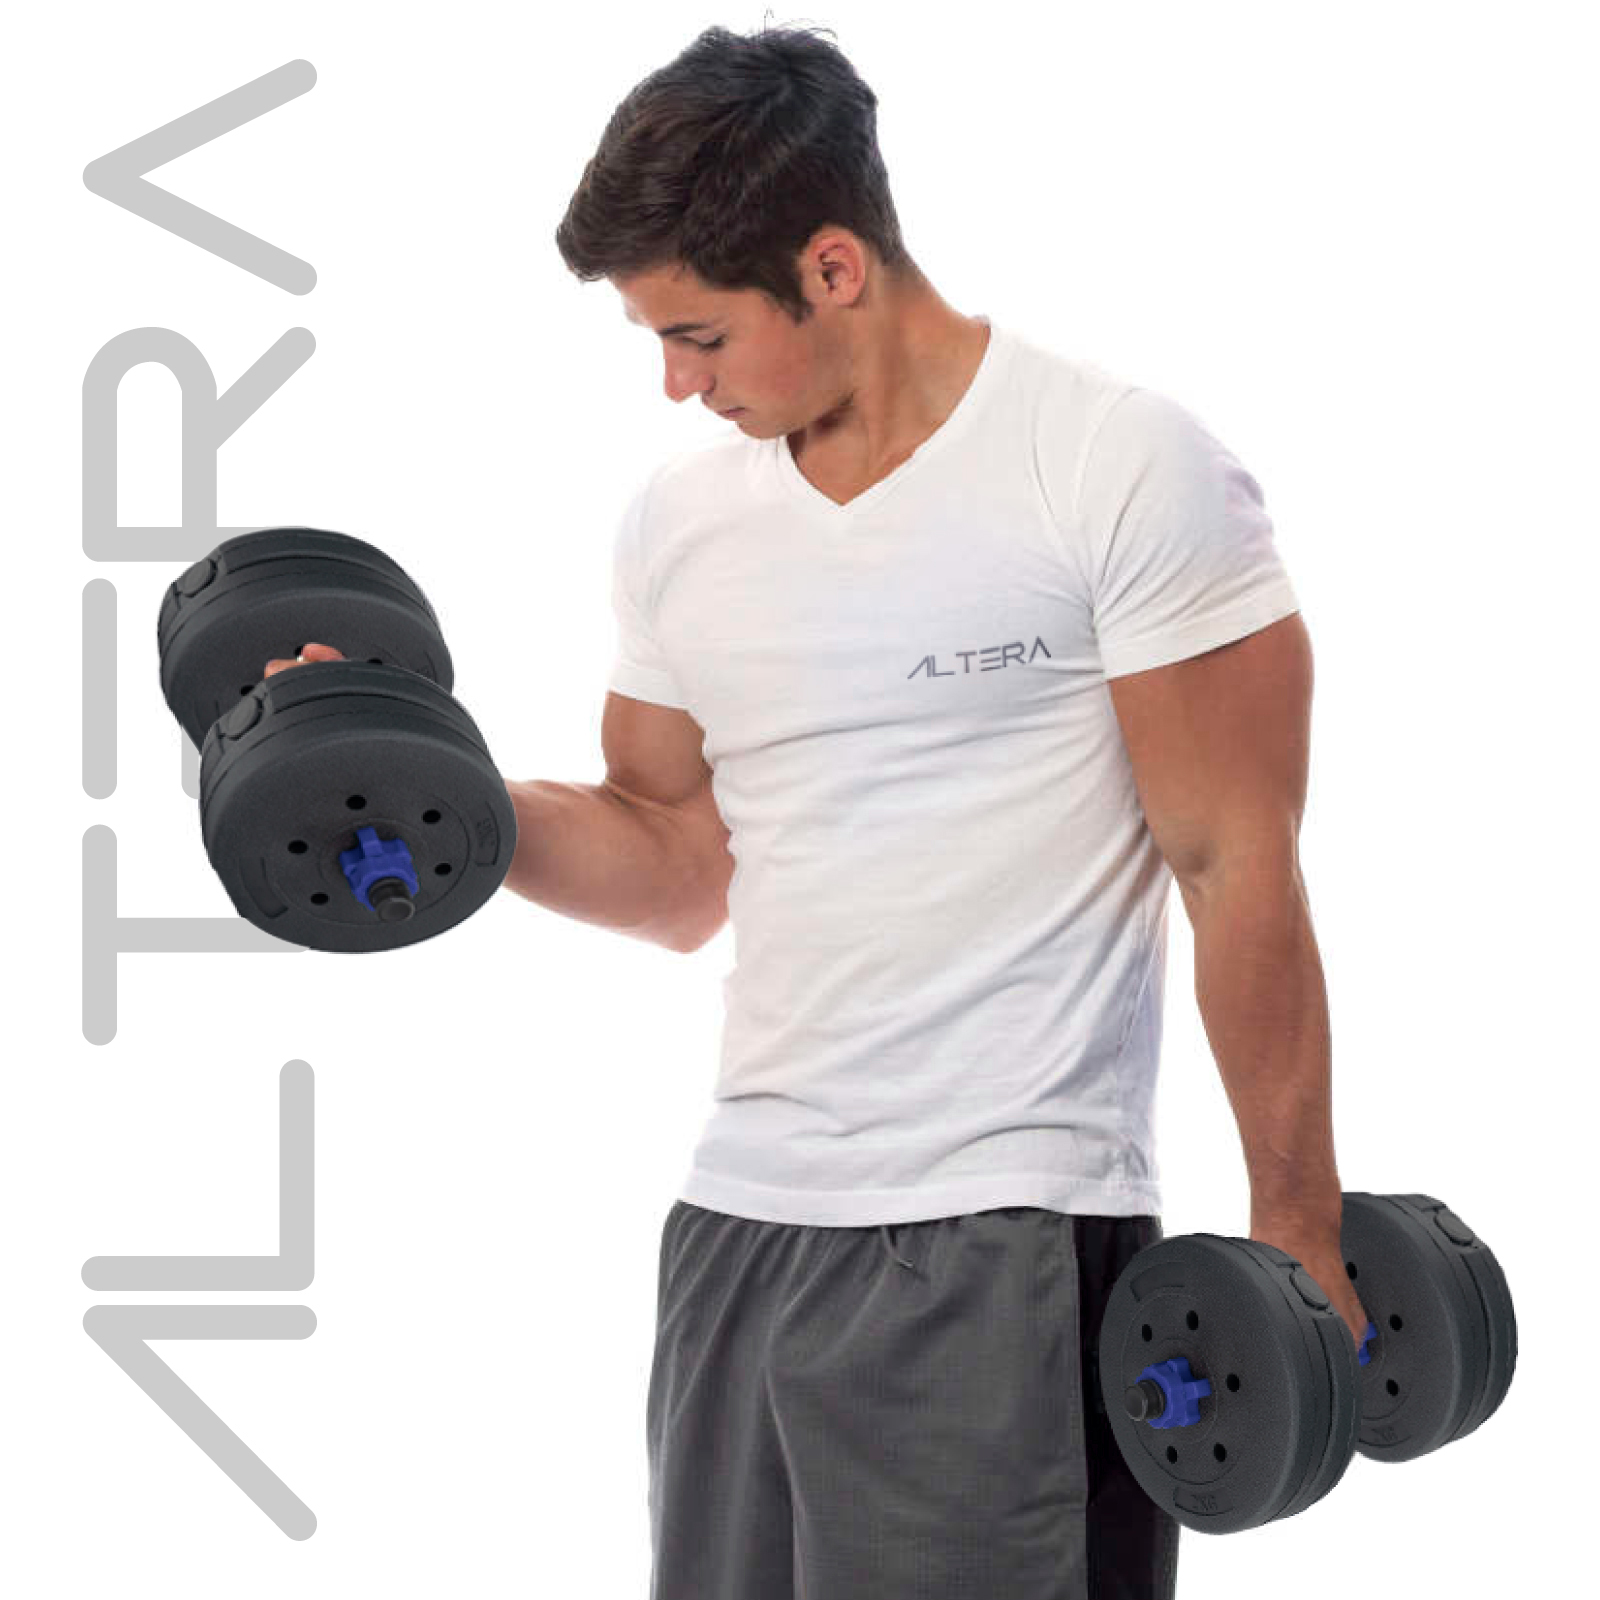 Victor Fitness Pesa rusa ajustable con 7 niveles de peso de 10 a 40 libras.  Perfecto para entrenamientos de abdominales, brazos, piernas y espalda